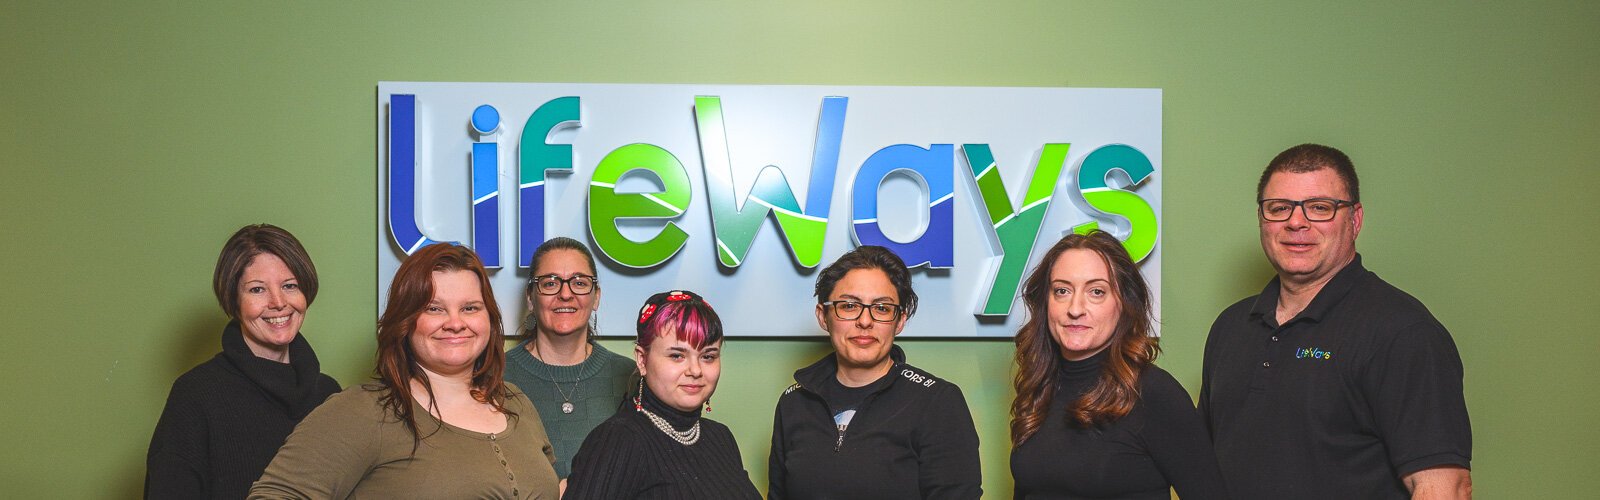 LifeWays staff:  Alicia Swisher (L), Kali Stanton, Lisa Schultz, Dee Geisenhaver, Connie Lopez, Reta Edger, and Chad Surque.